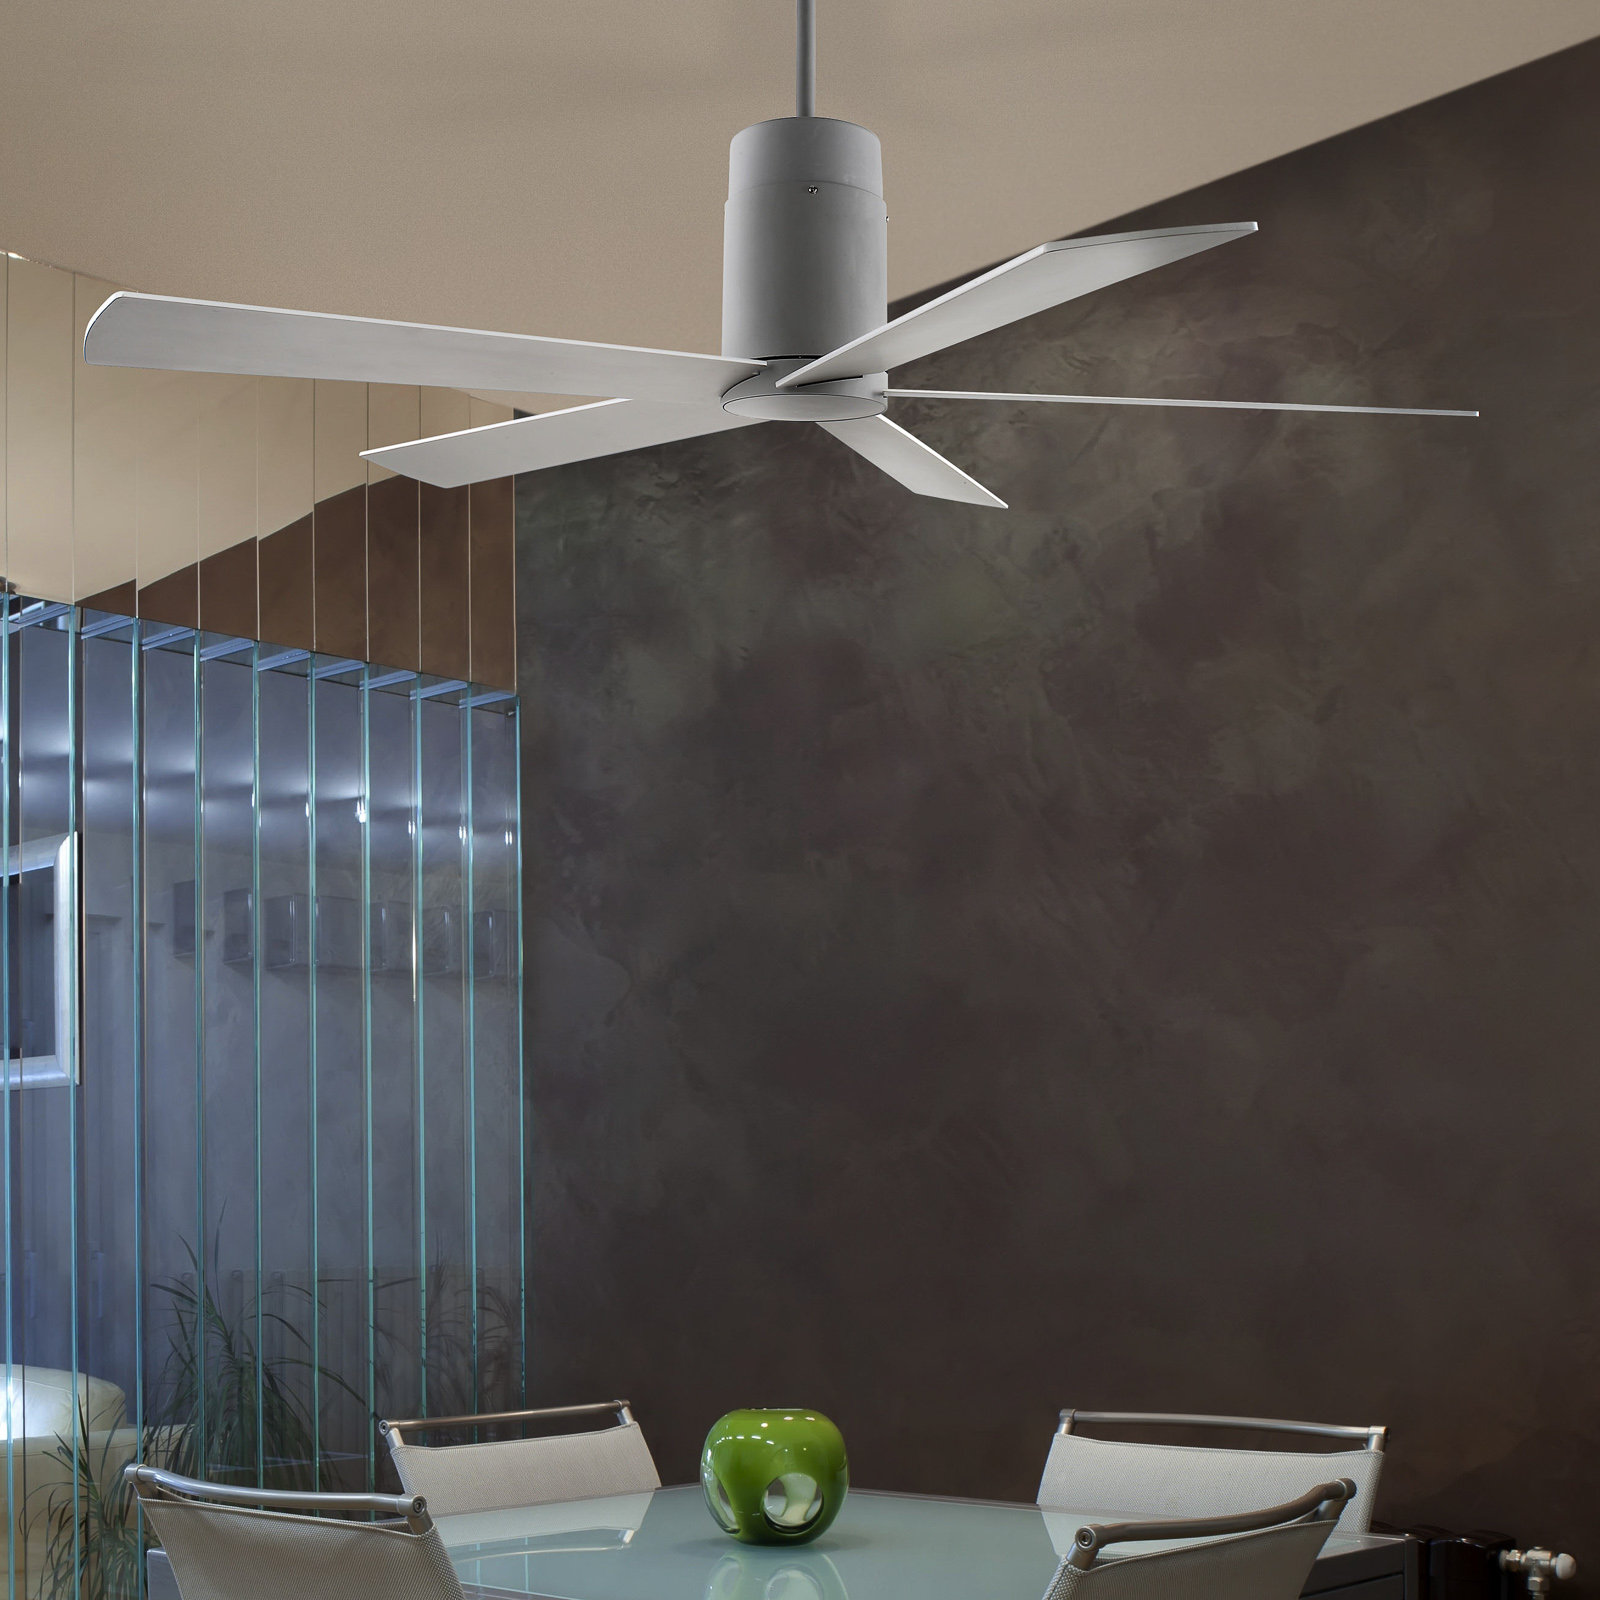 Čirý designový stropní ventilátor Rodas - bílá